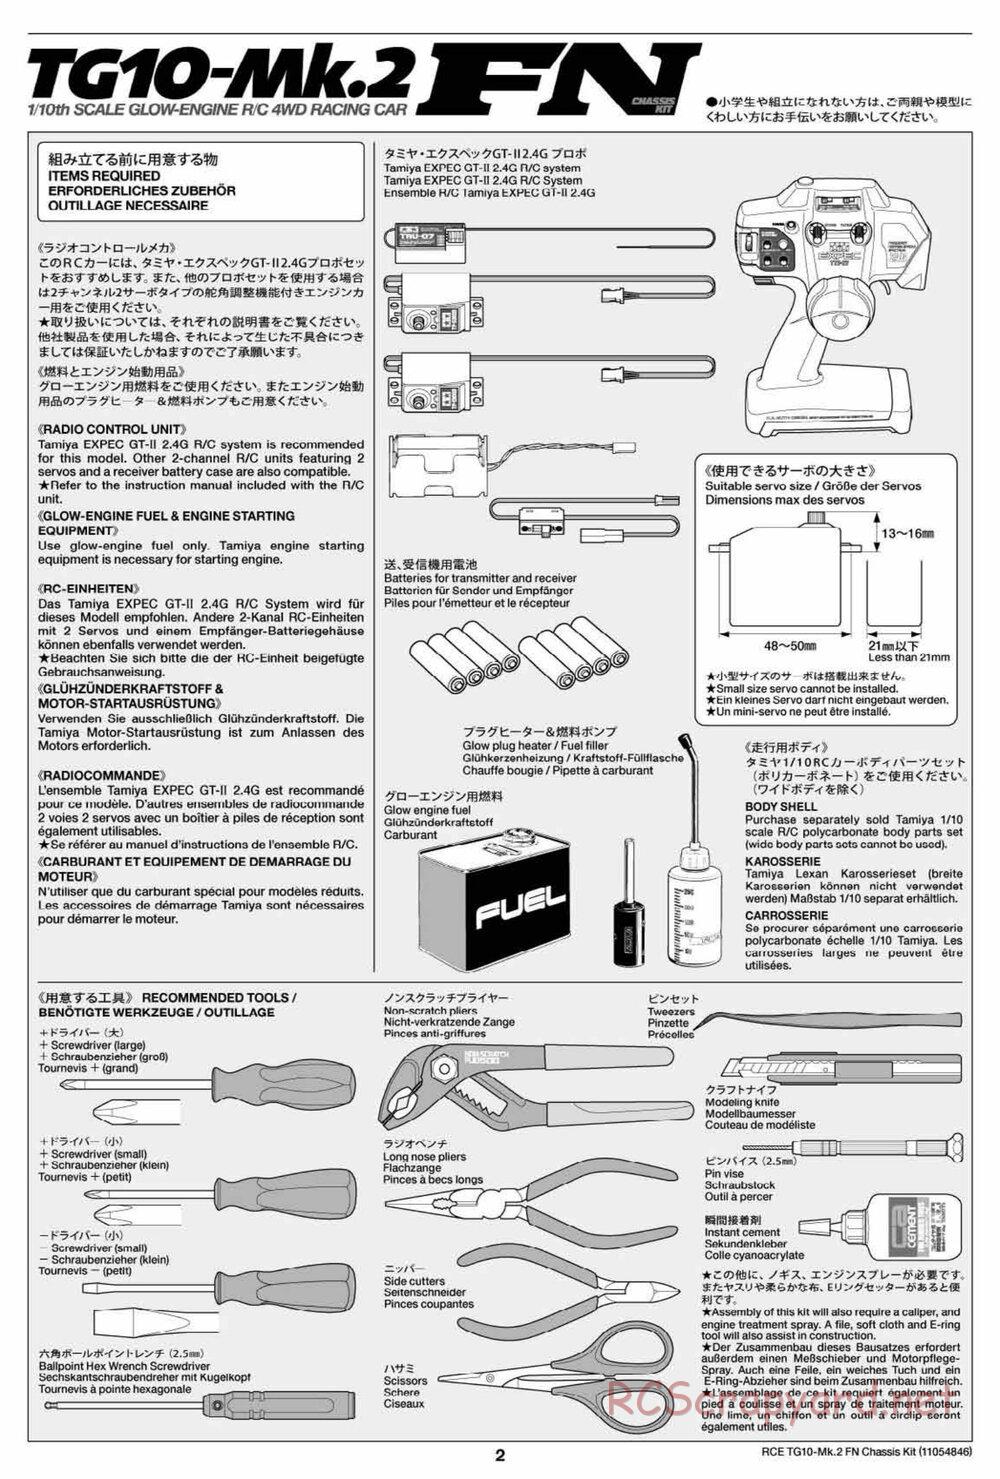 Tamiya - TG10 Mk.2 FN Chassis - Manual - Page 2